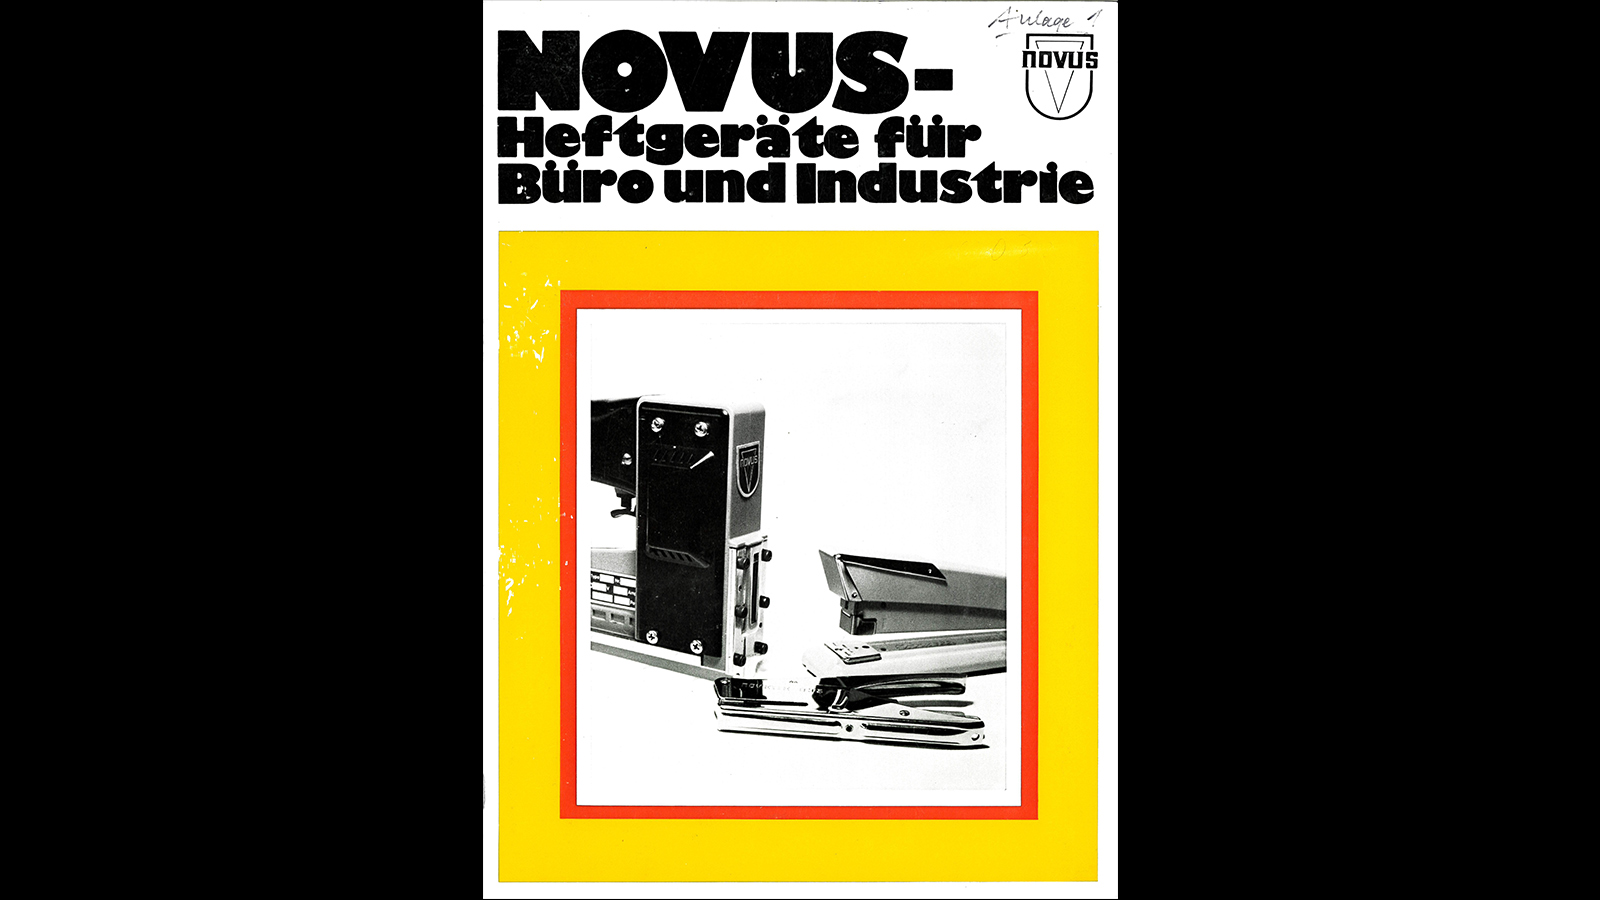 75 ans des agrafeuses Novus